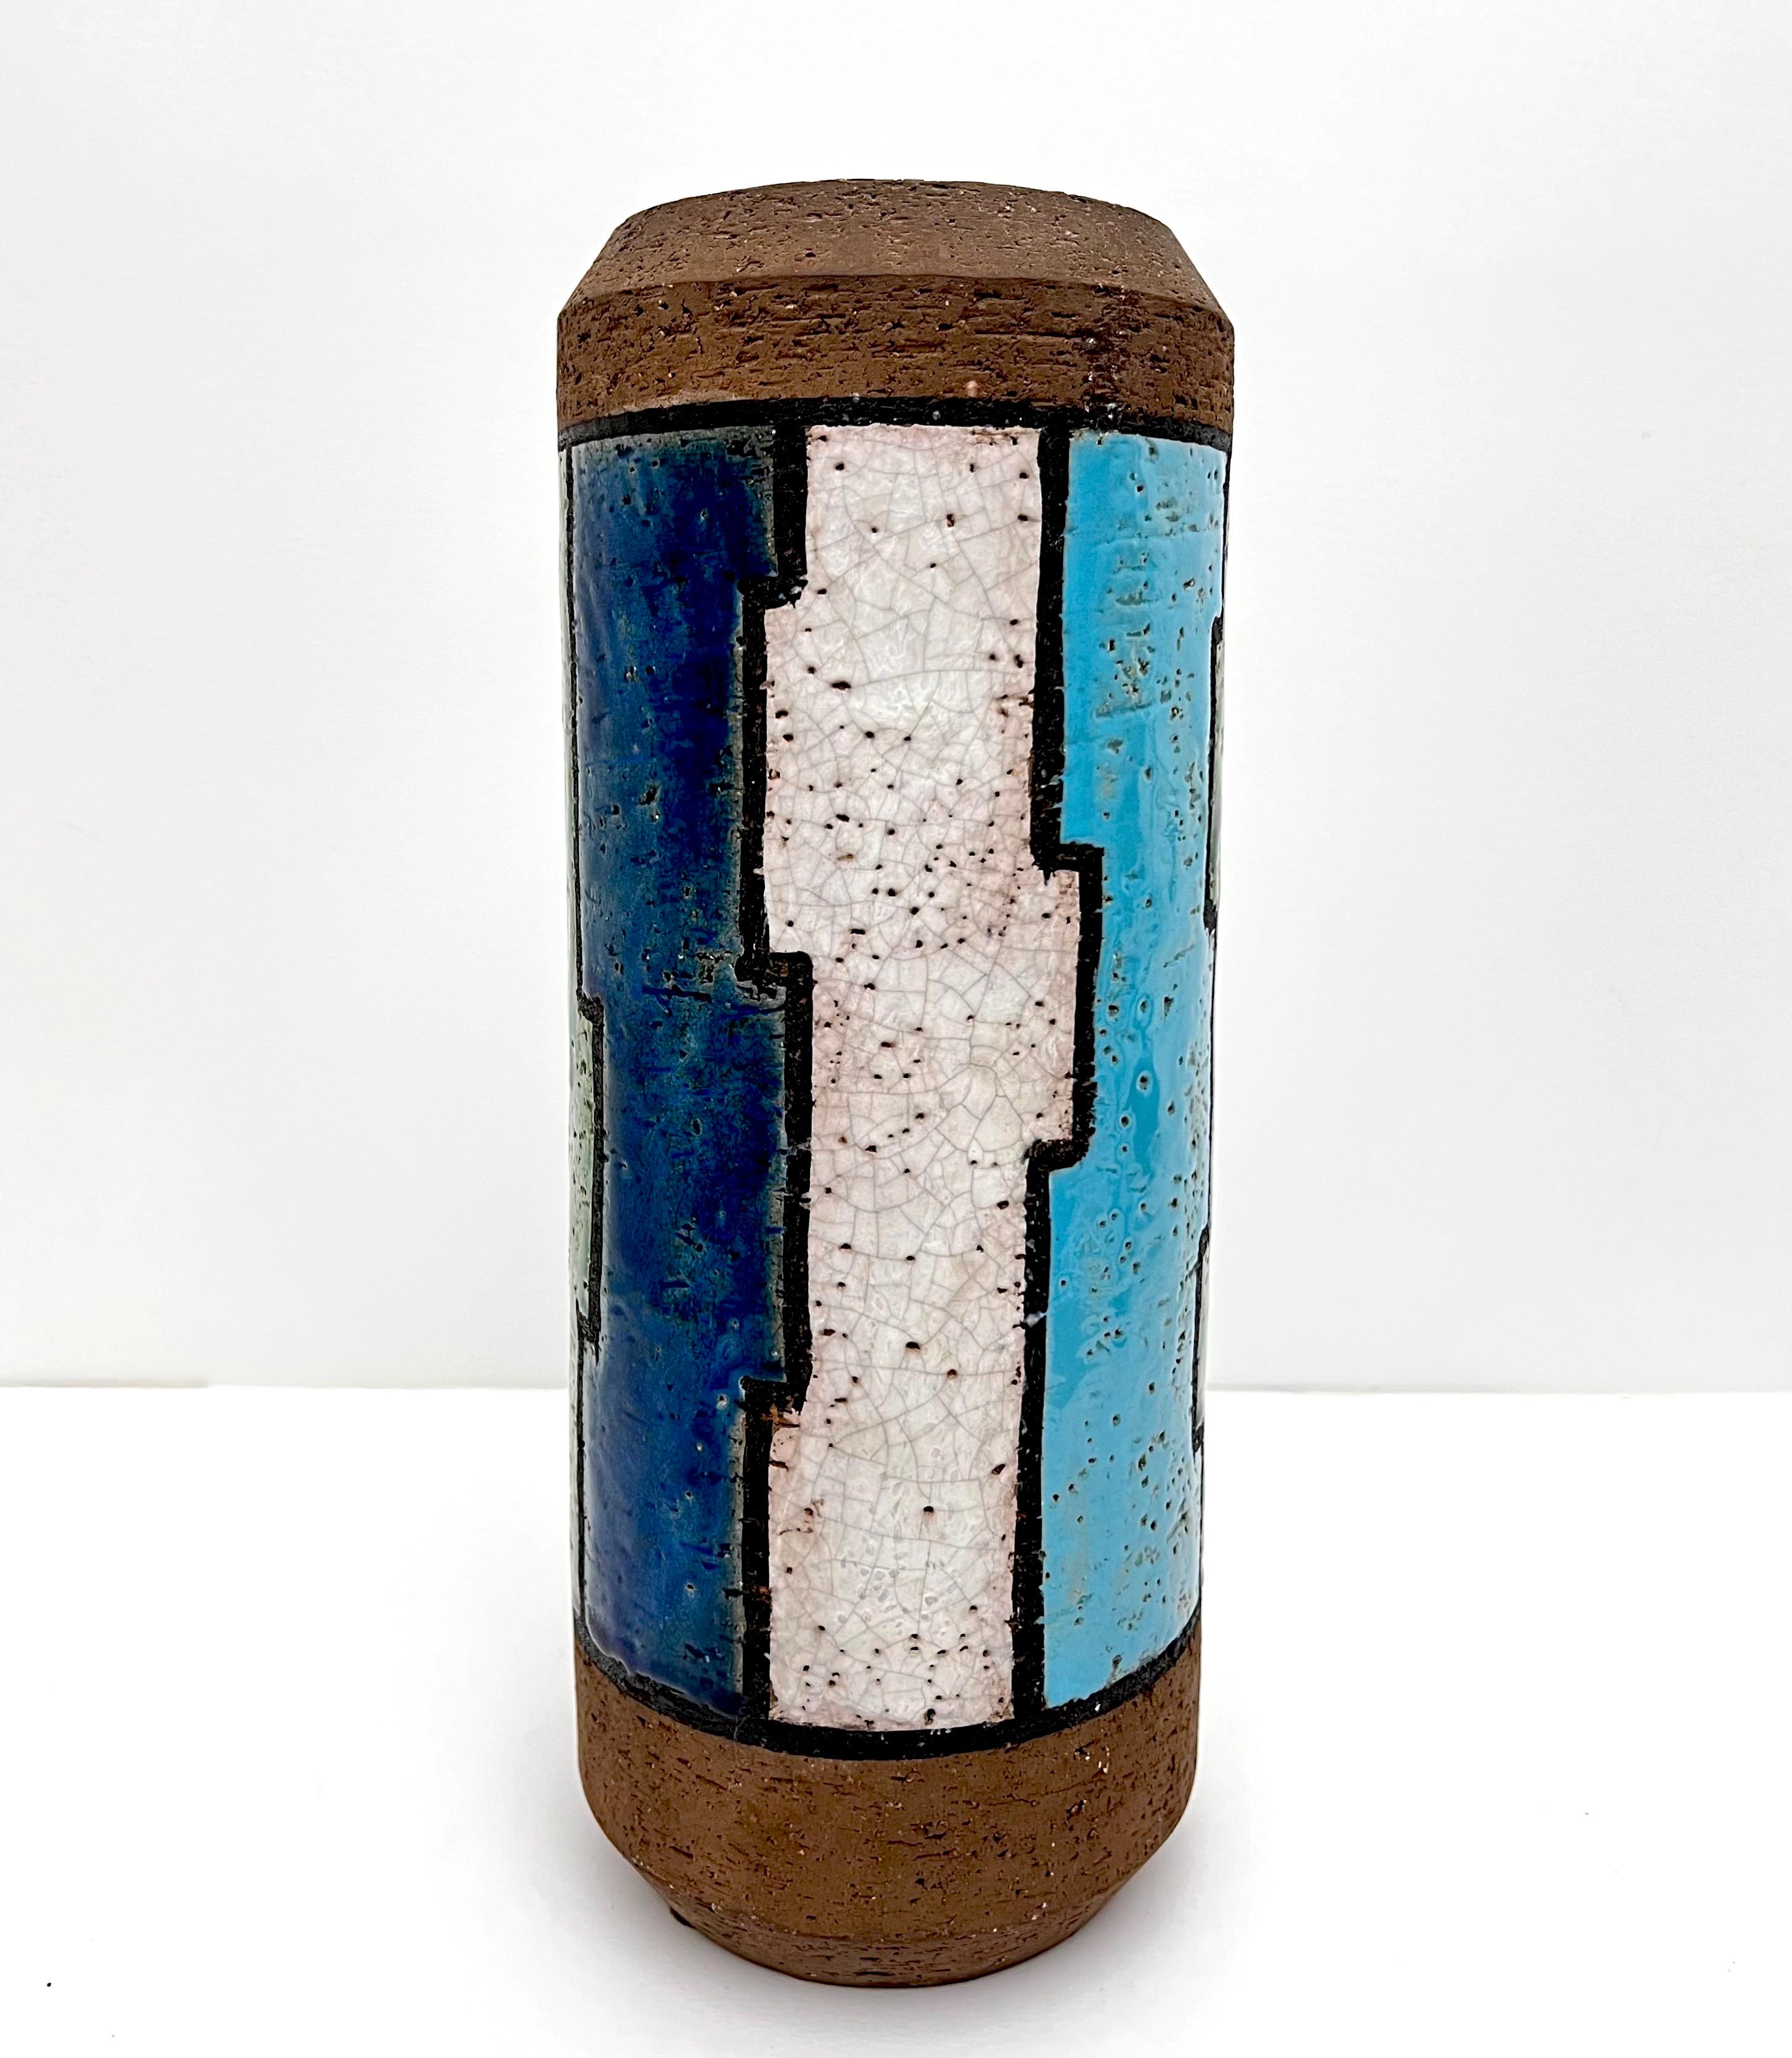 Sehr geometrische und fabelhafte große 60er Jahre Bitossi Lineas Rotas Vase von Aldo Londi.  Die großartigen Farben Aqua, Grün, Marine und Weiß, gemischt mit einem schokoladenbraunen, grobmattierten Tonkörper, stammen aus Londis Serie Líneas Rotas